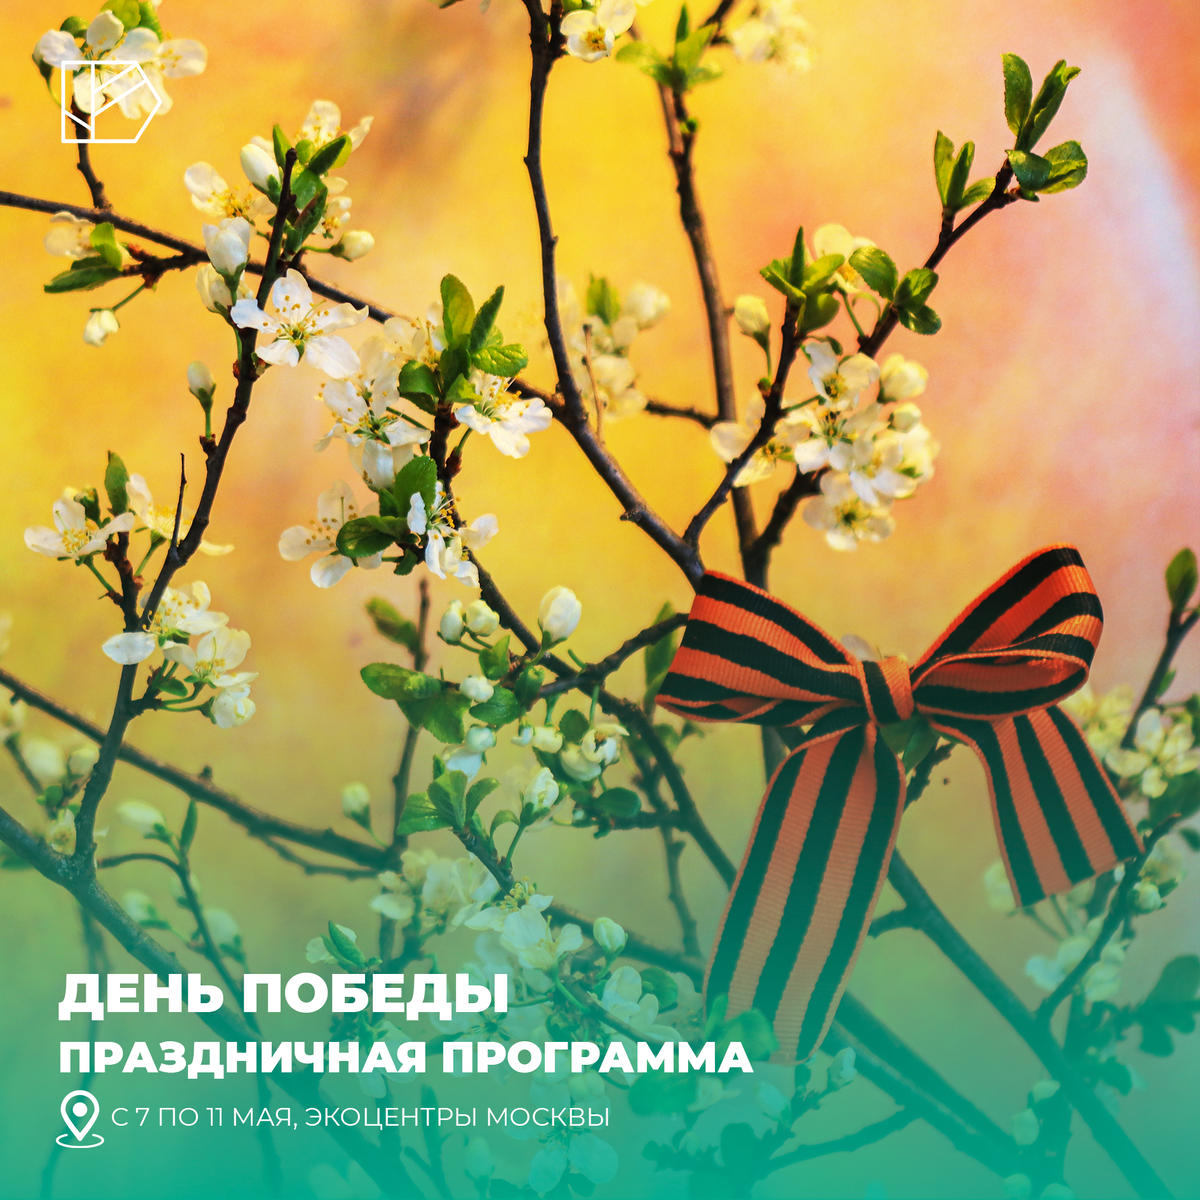 Департамент природопользования и охраны окружающей среды города Москвы приглашает москвичей в столичные экоцентры на тематические лекции, занятия и мастер-классы, приуроченные к 9 Мая.